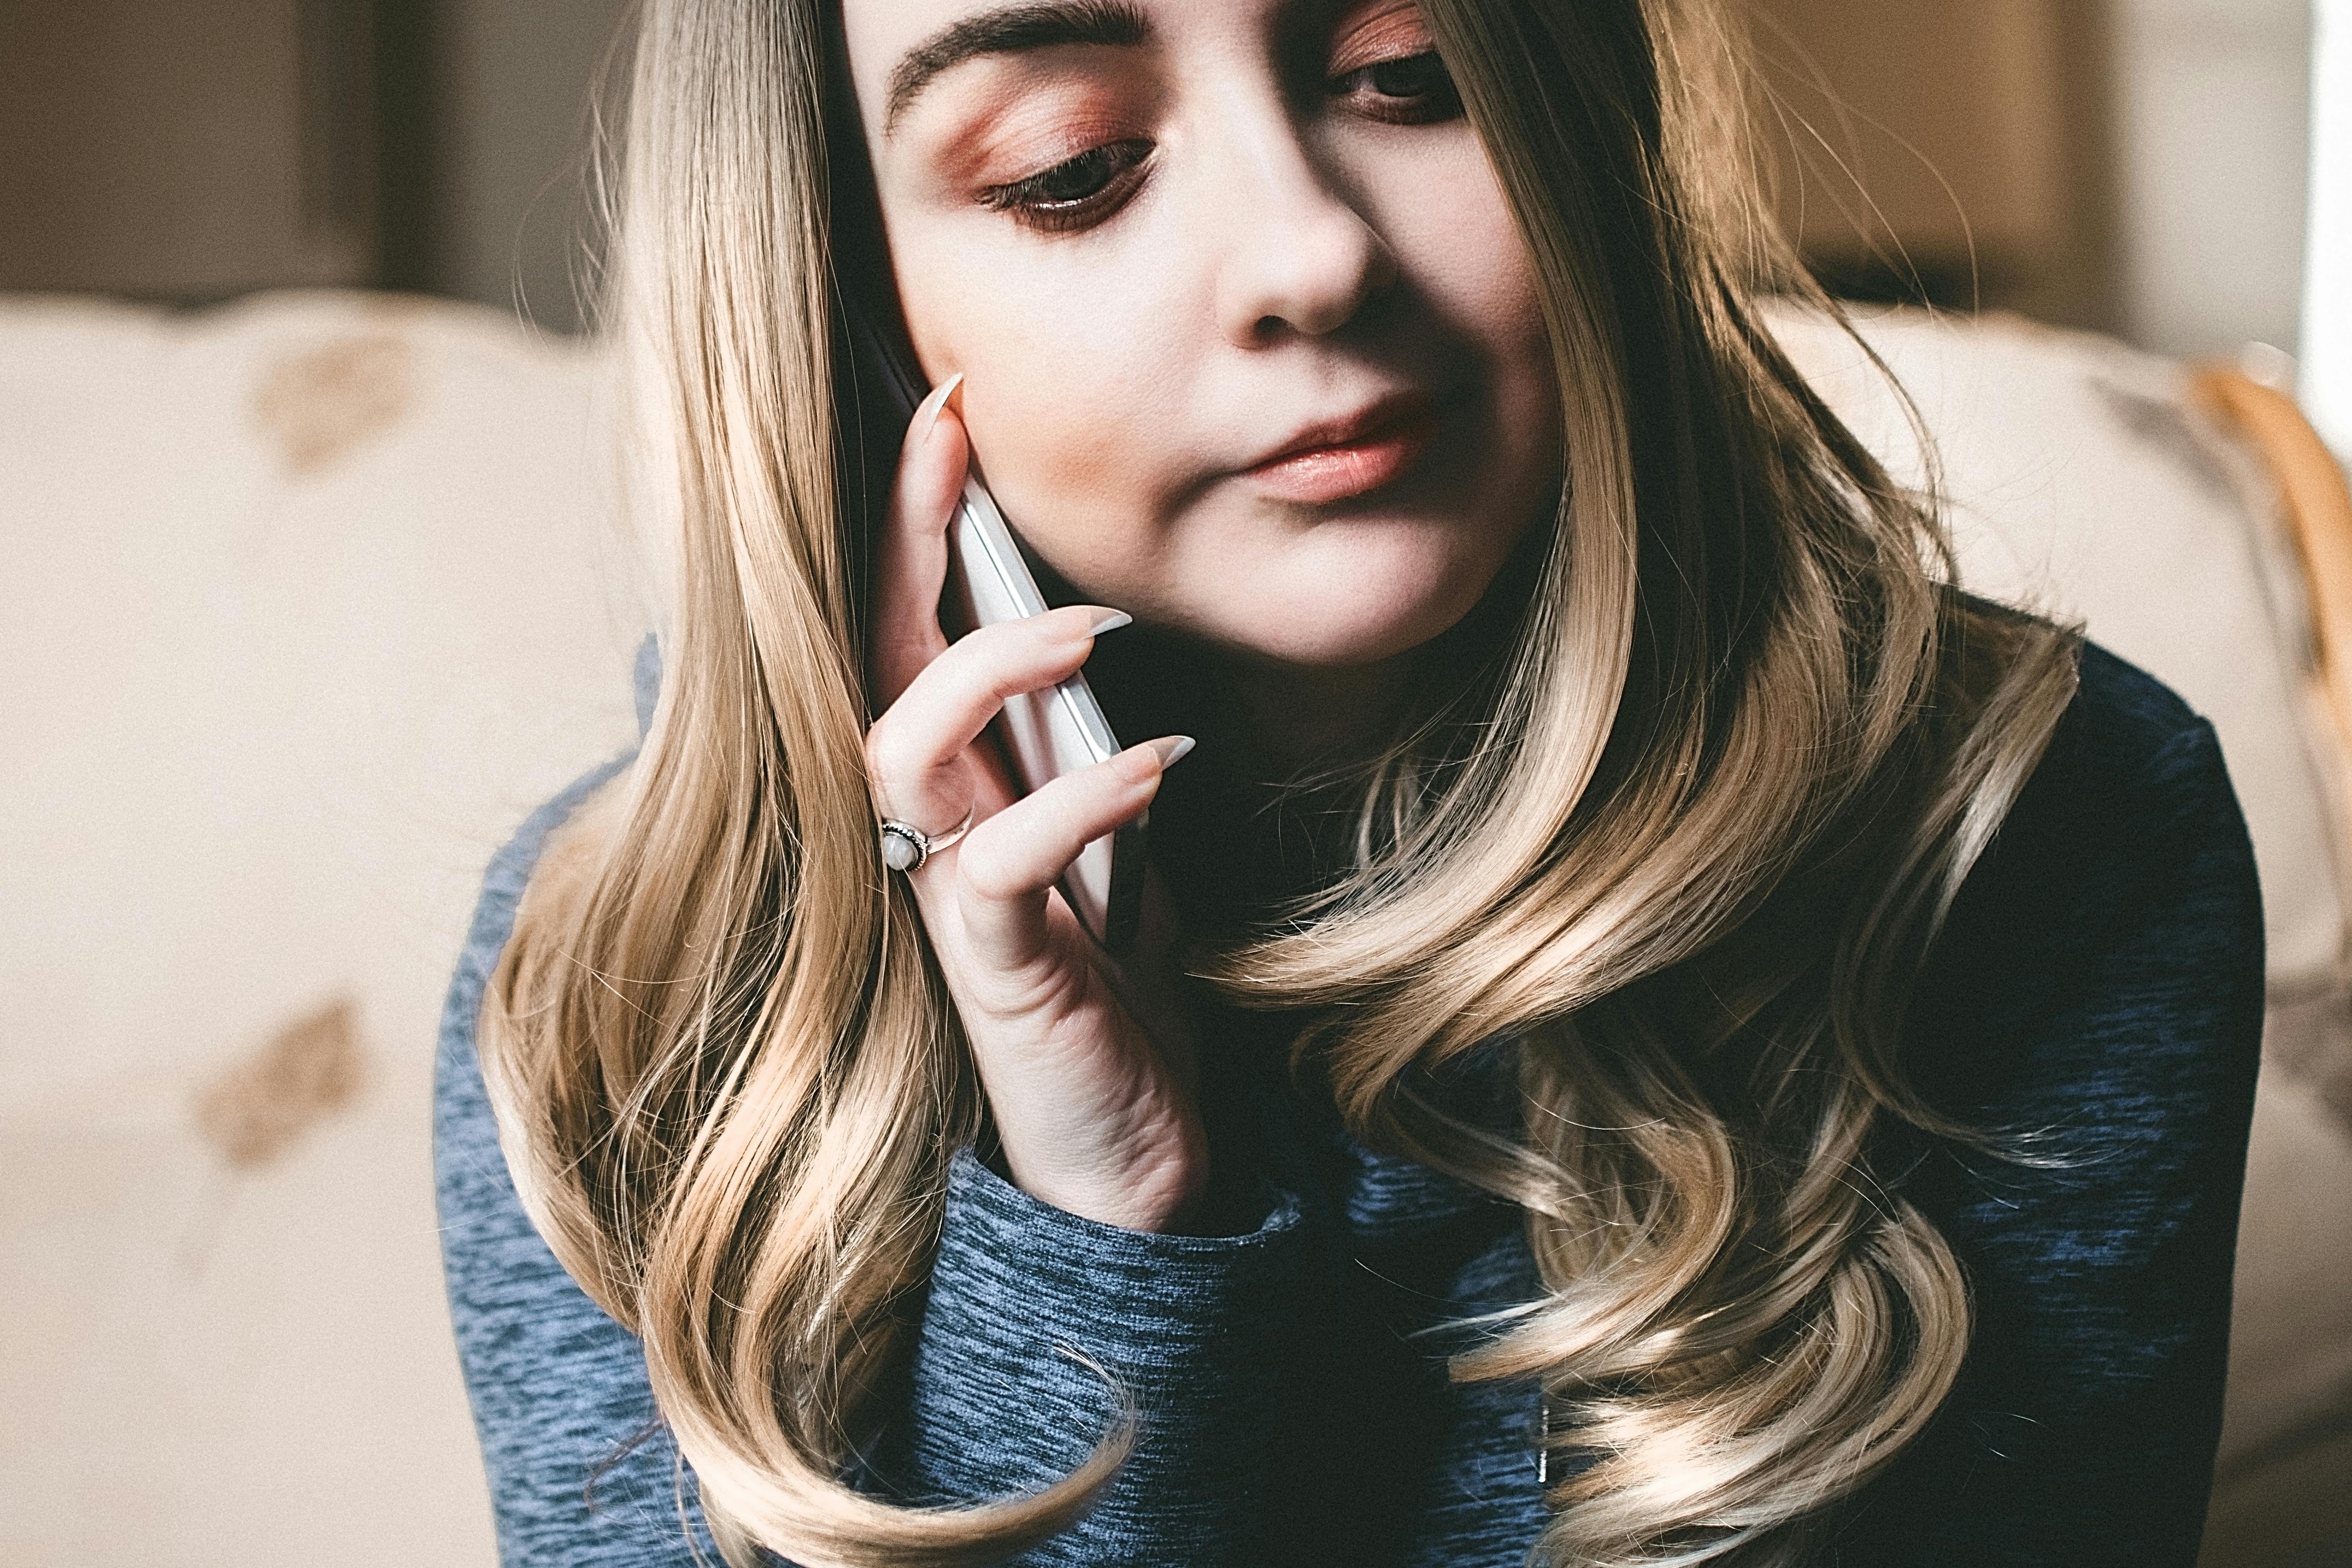 Ein junges Mädchen führt ein Gespräch am Telefon | Quelle: Pexels